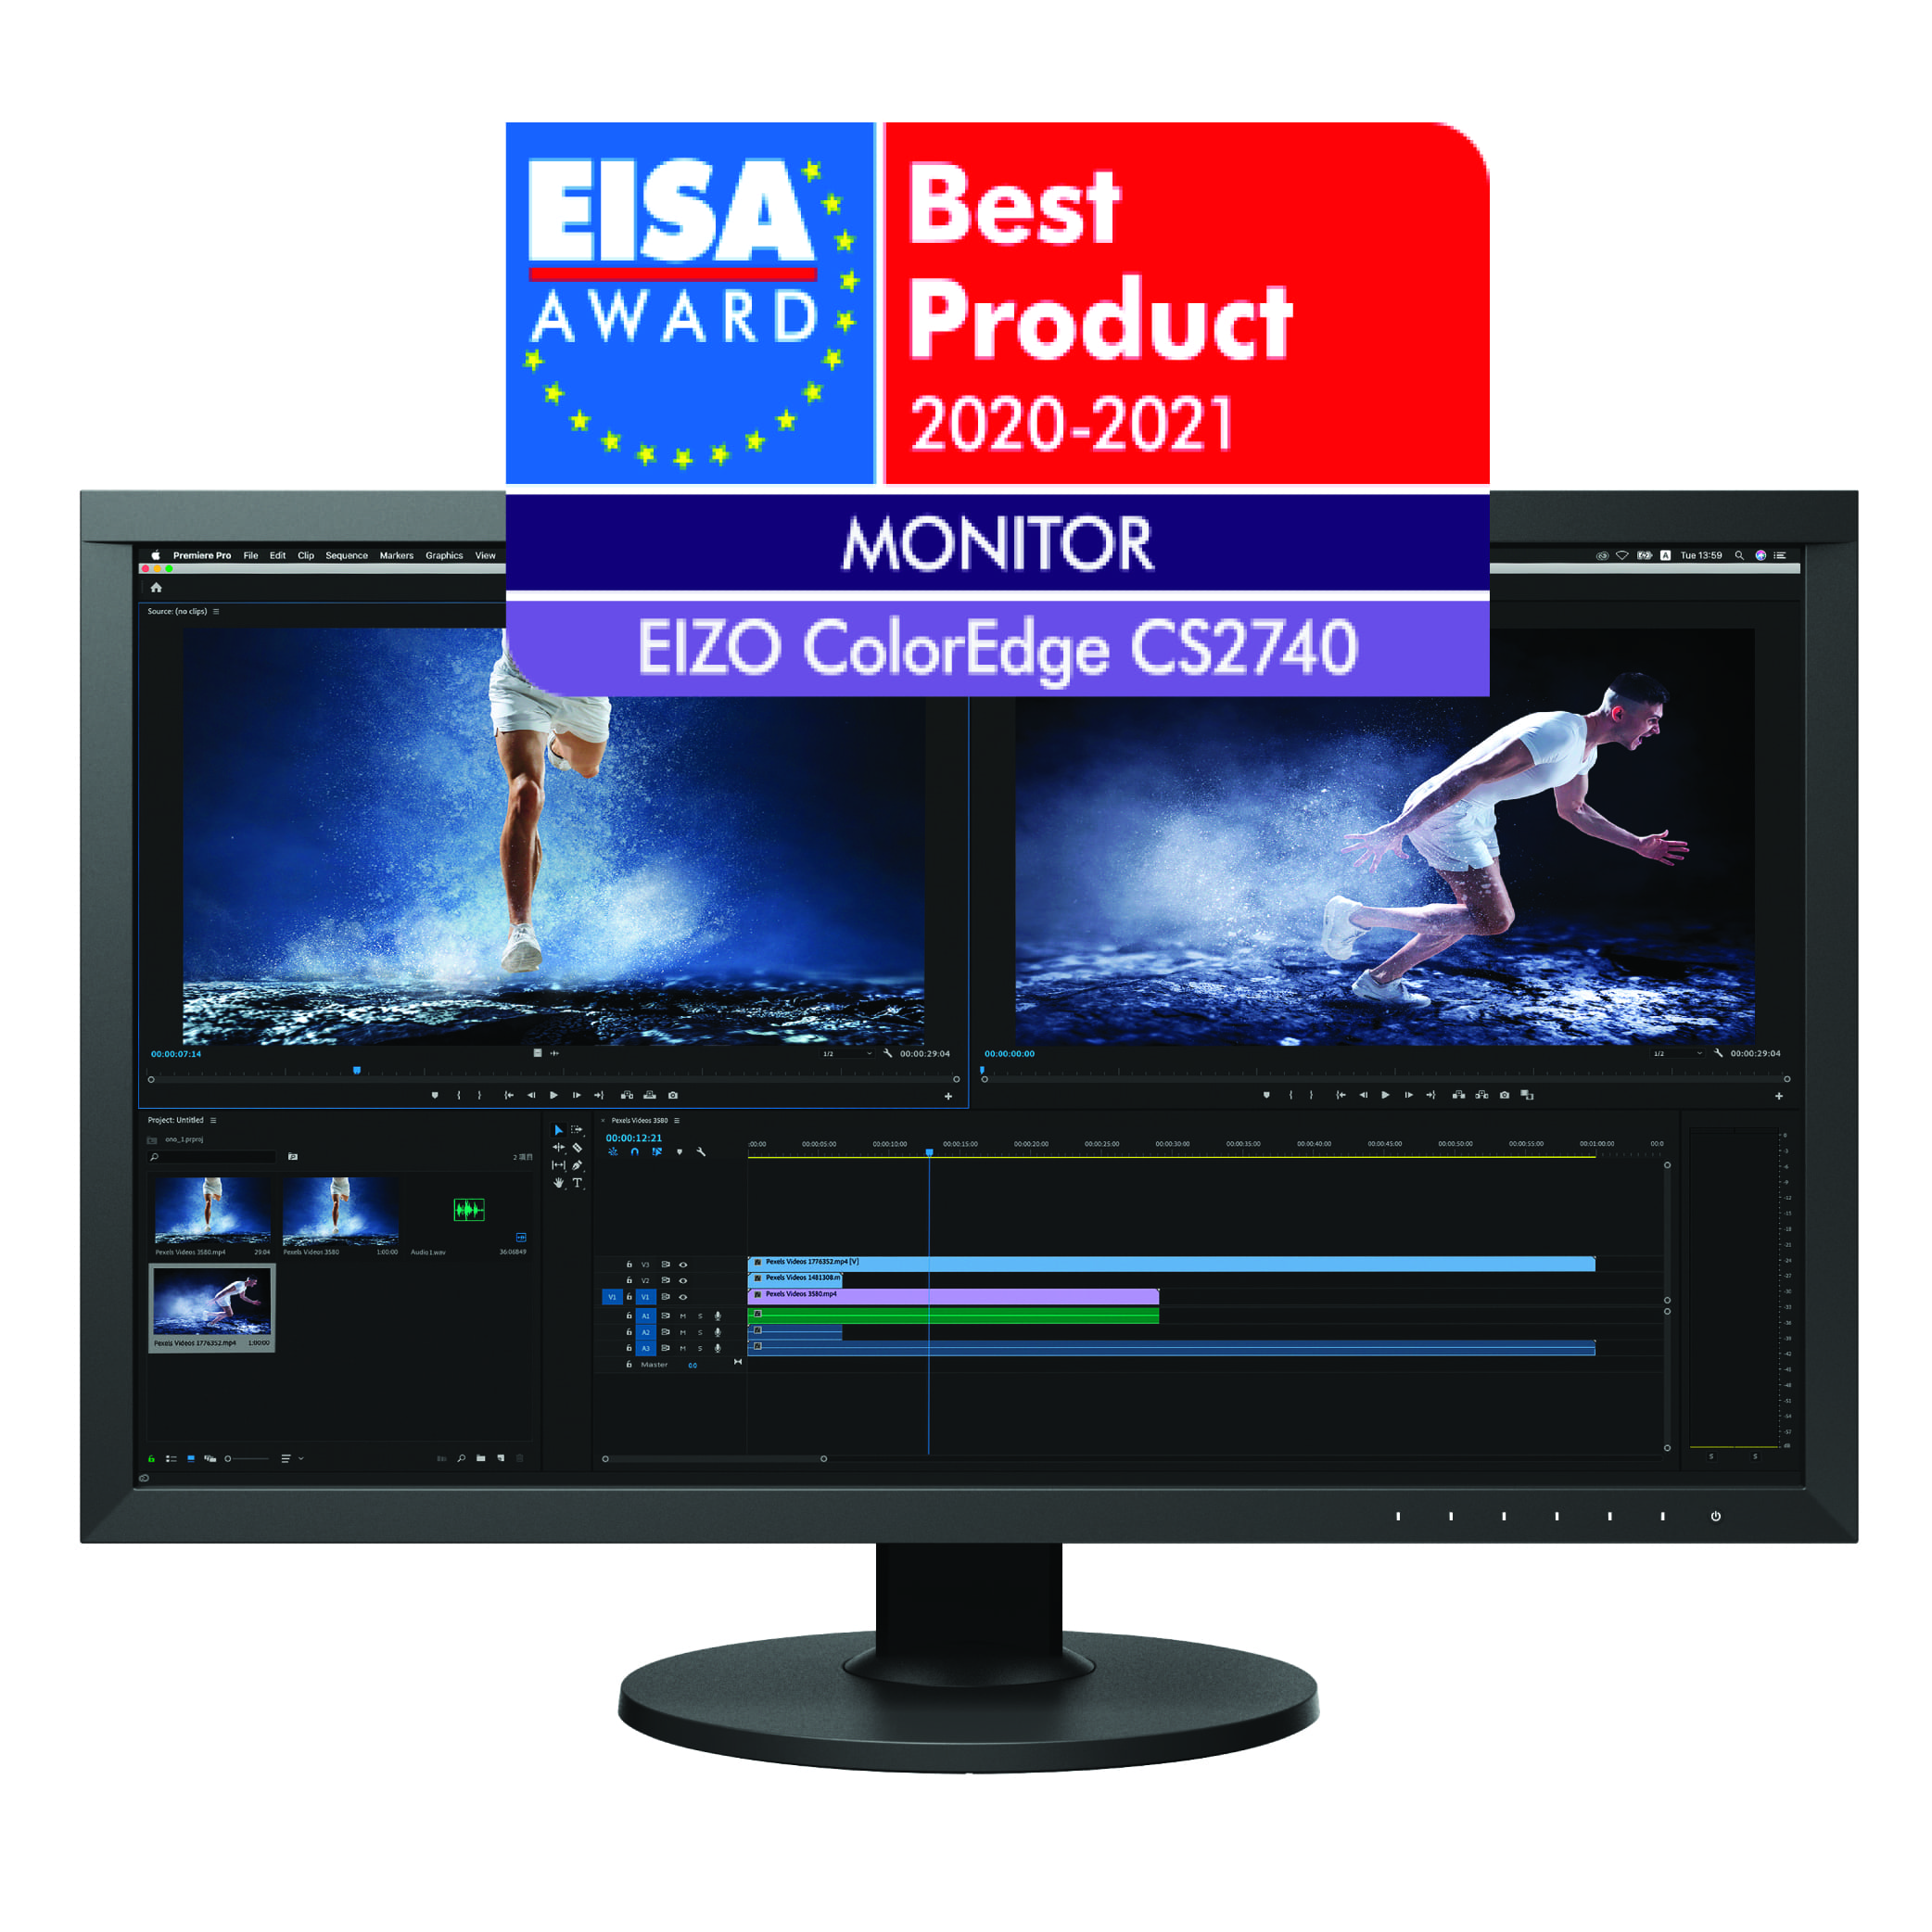 ColorEdge CS2740 Monitor | EIZO